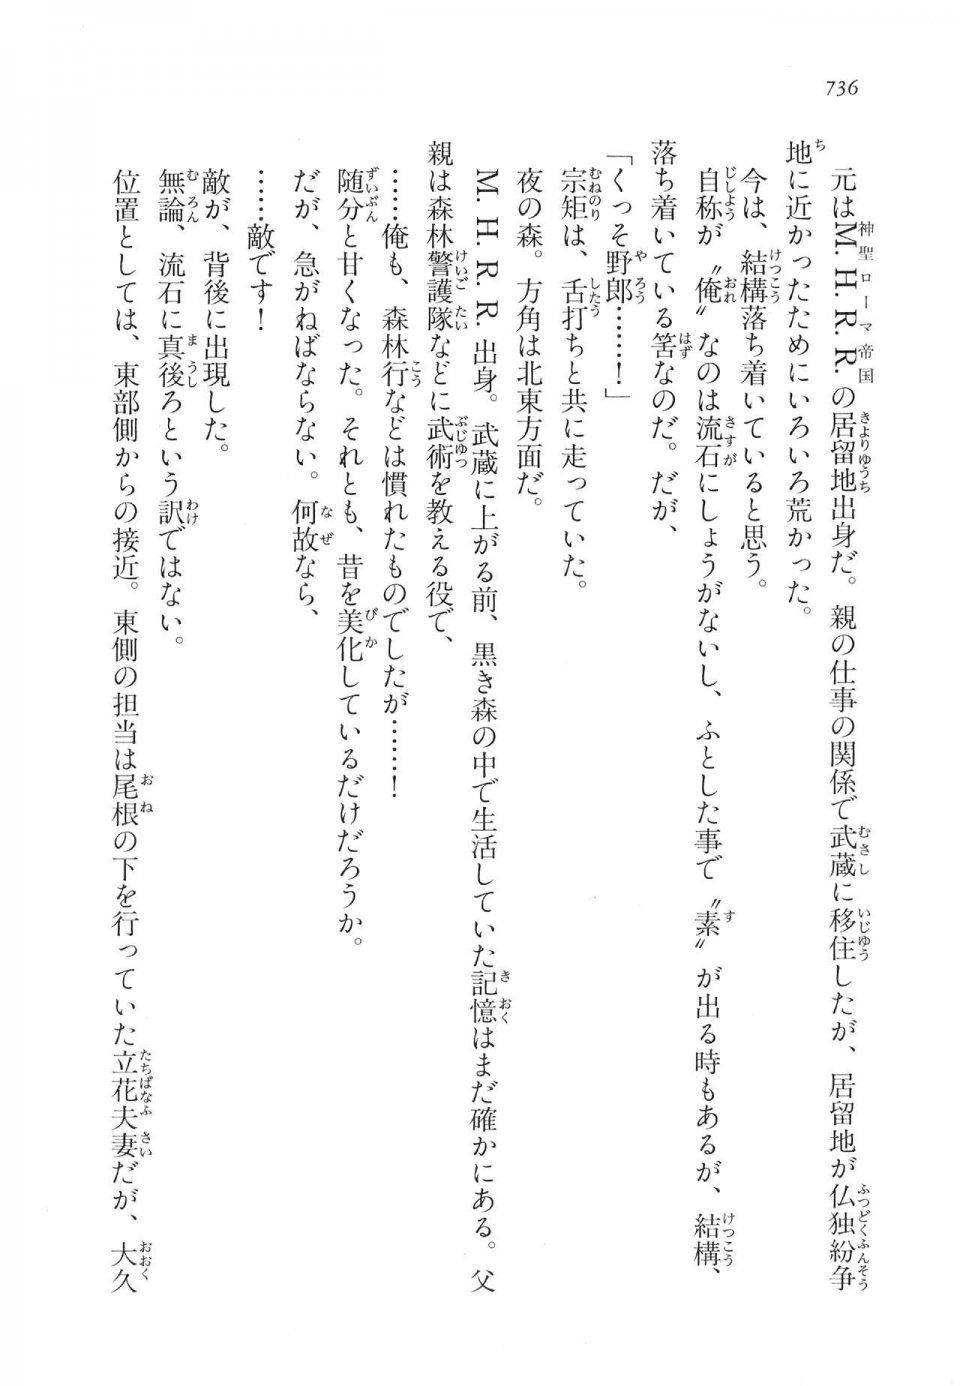 Kyoukai Senjou no Horizon LN Vol 17(7B) - Photo #738